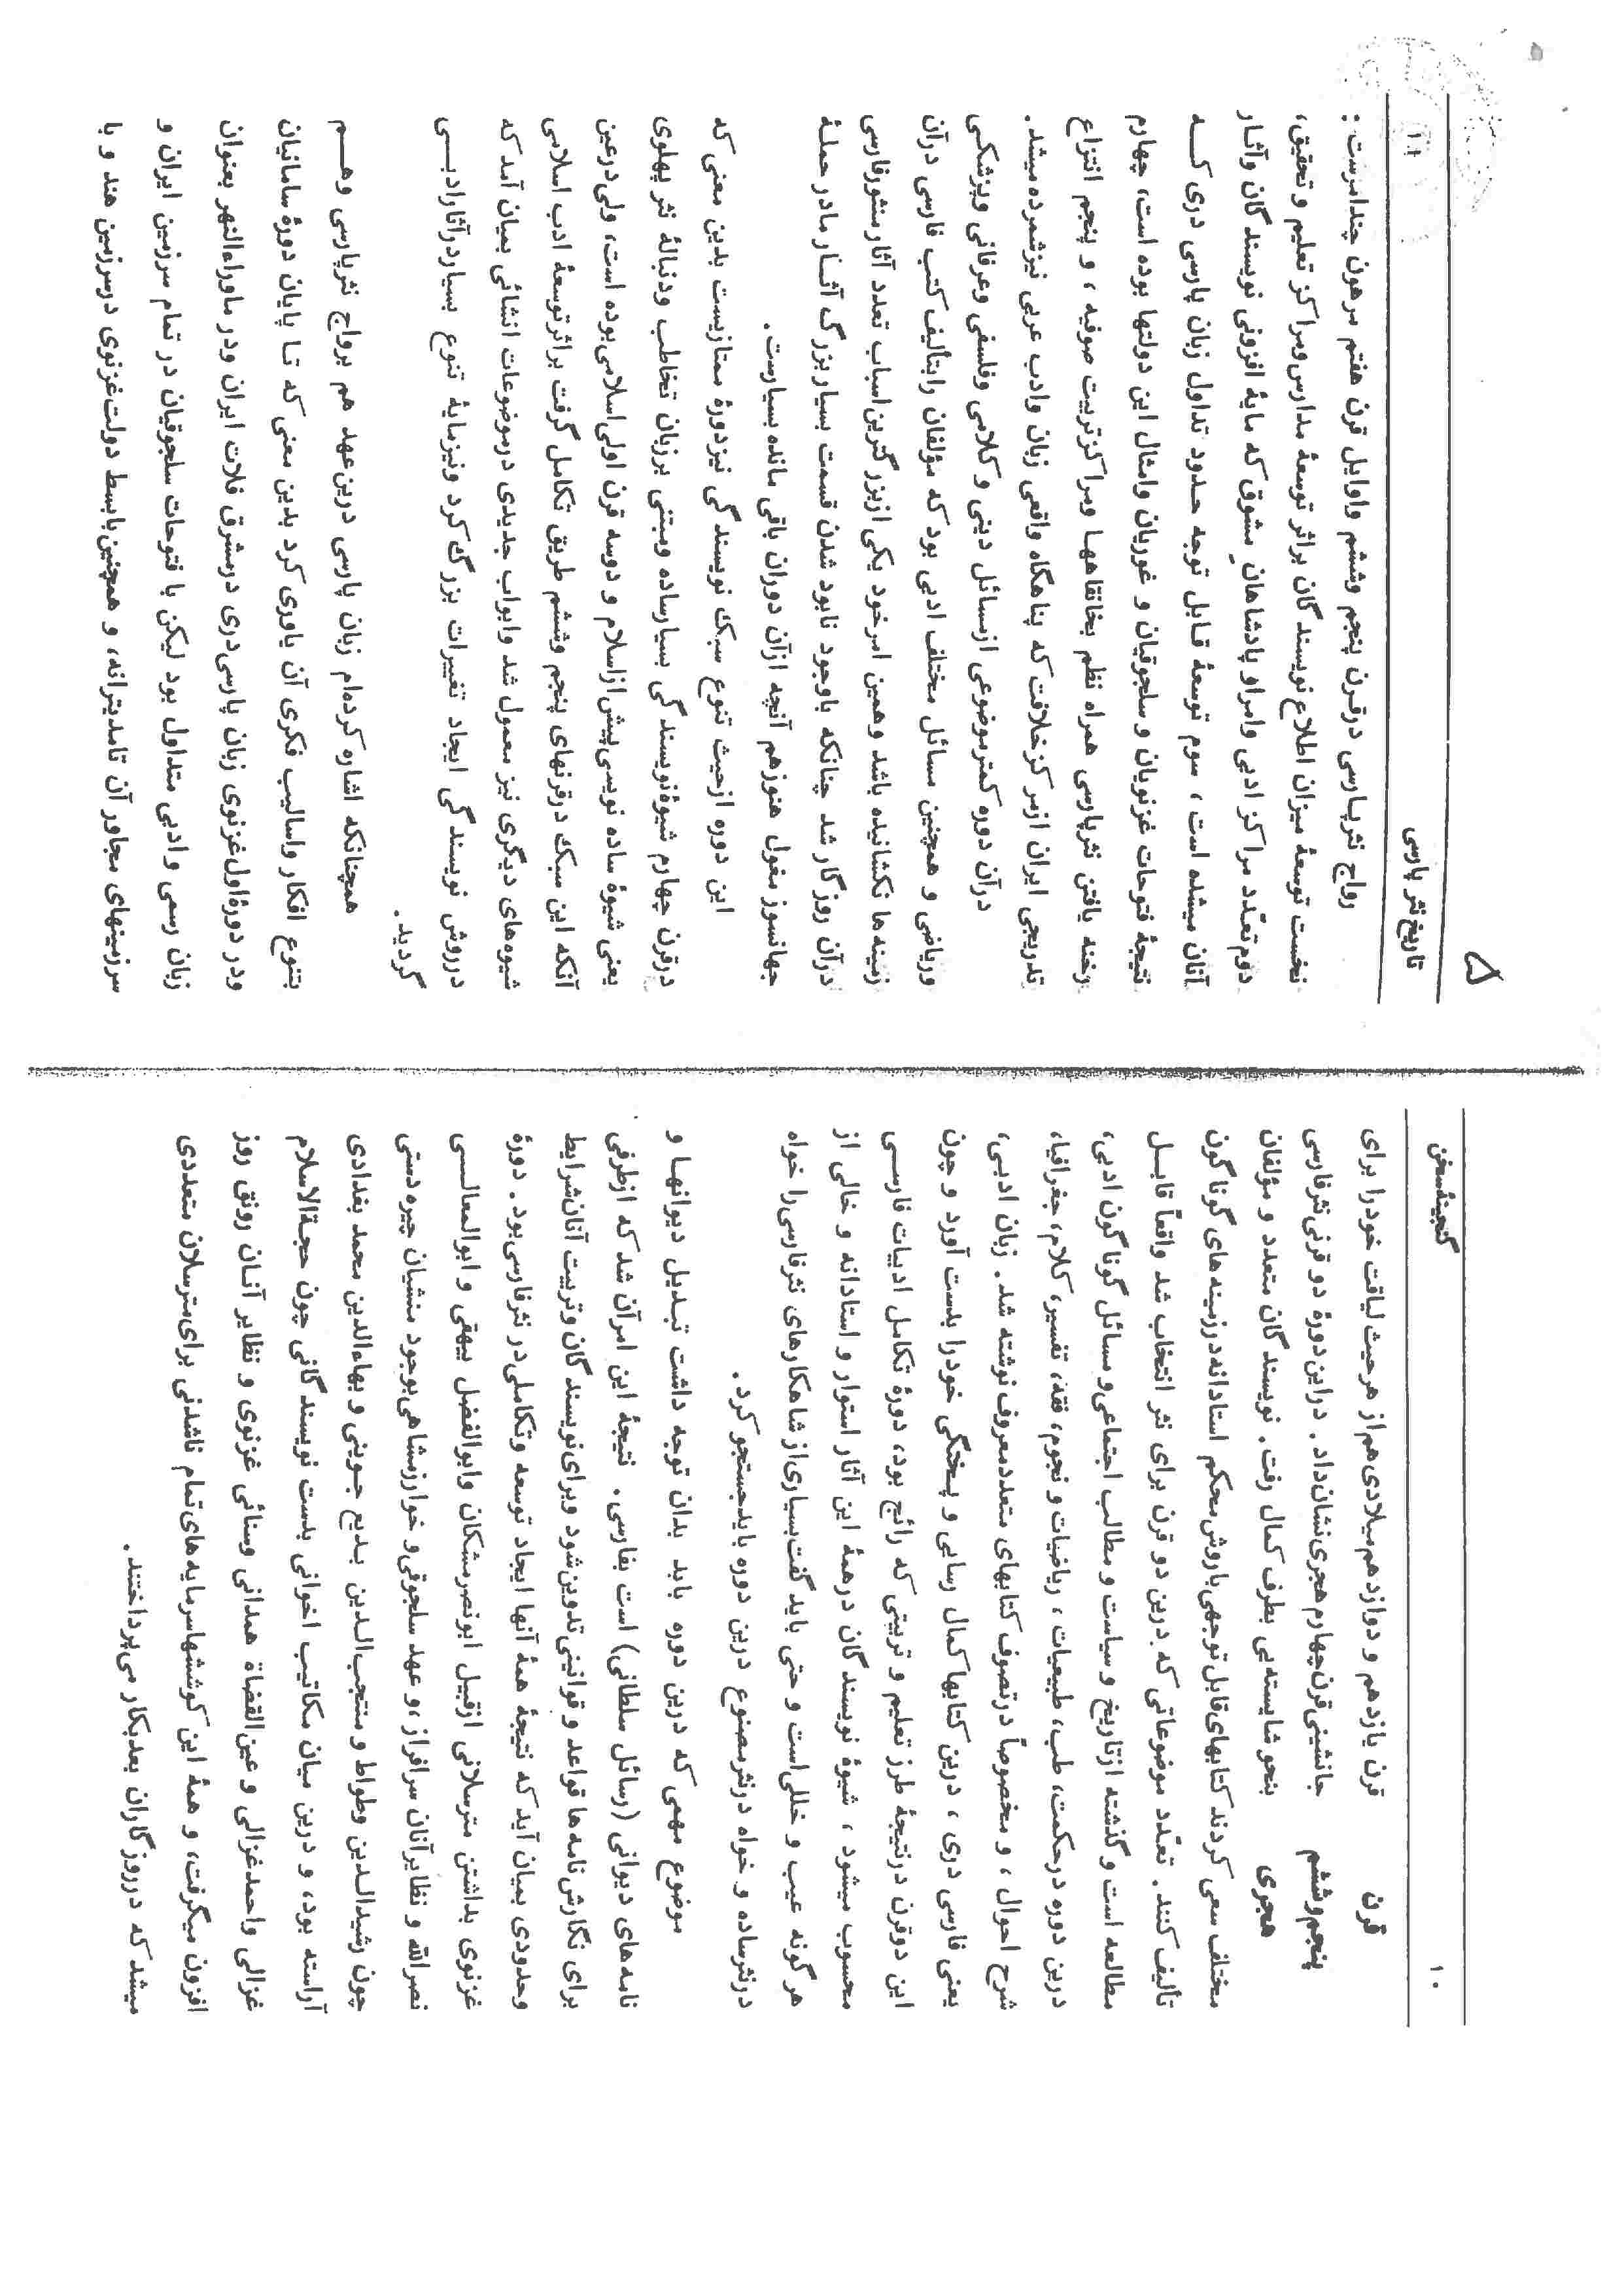 تطور نثر فارسی